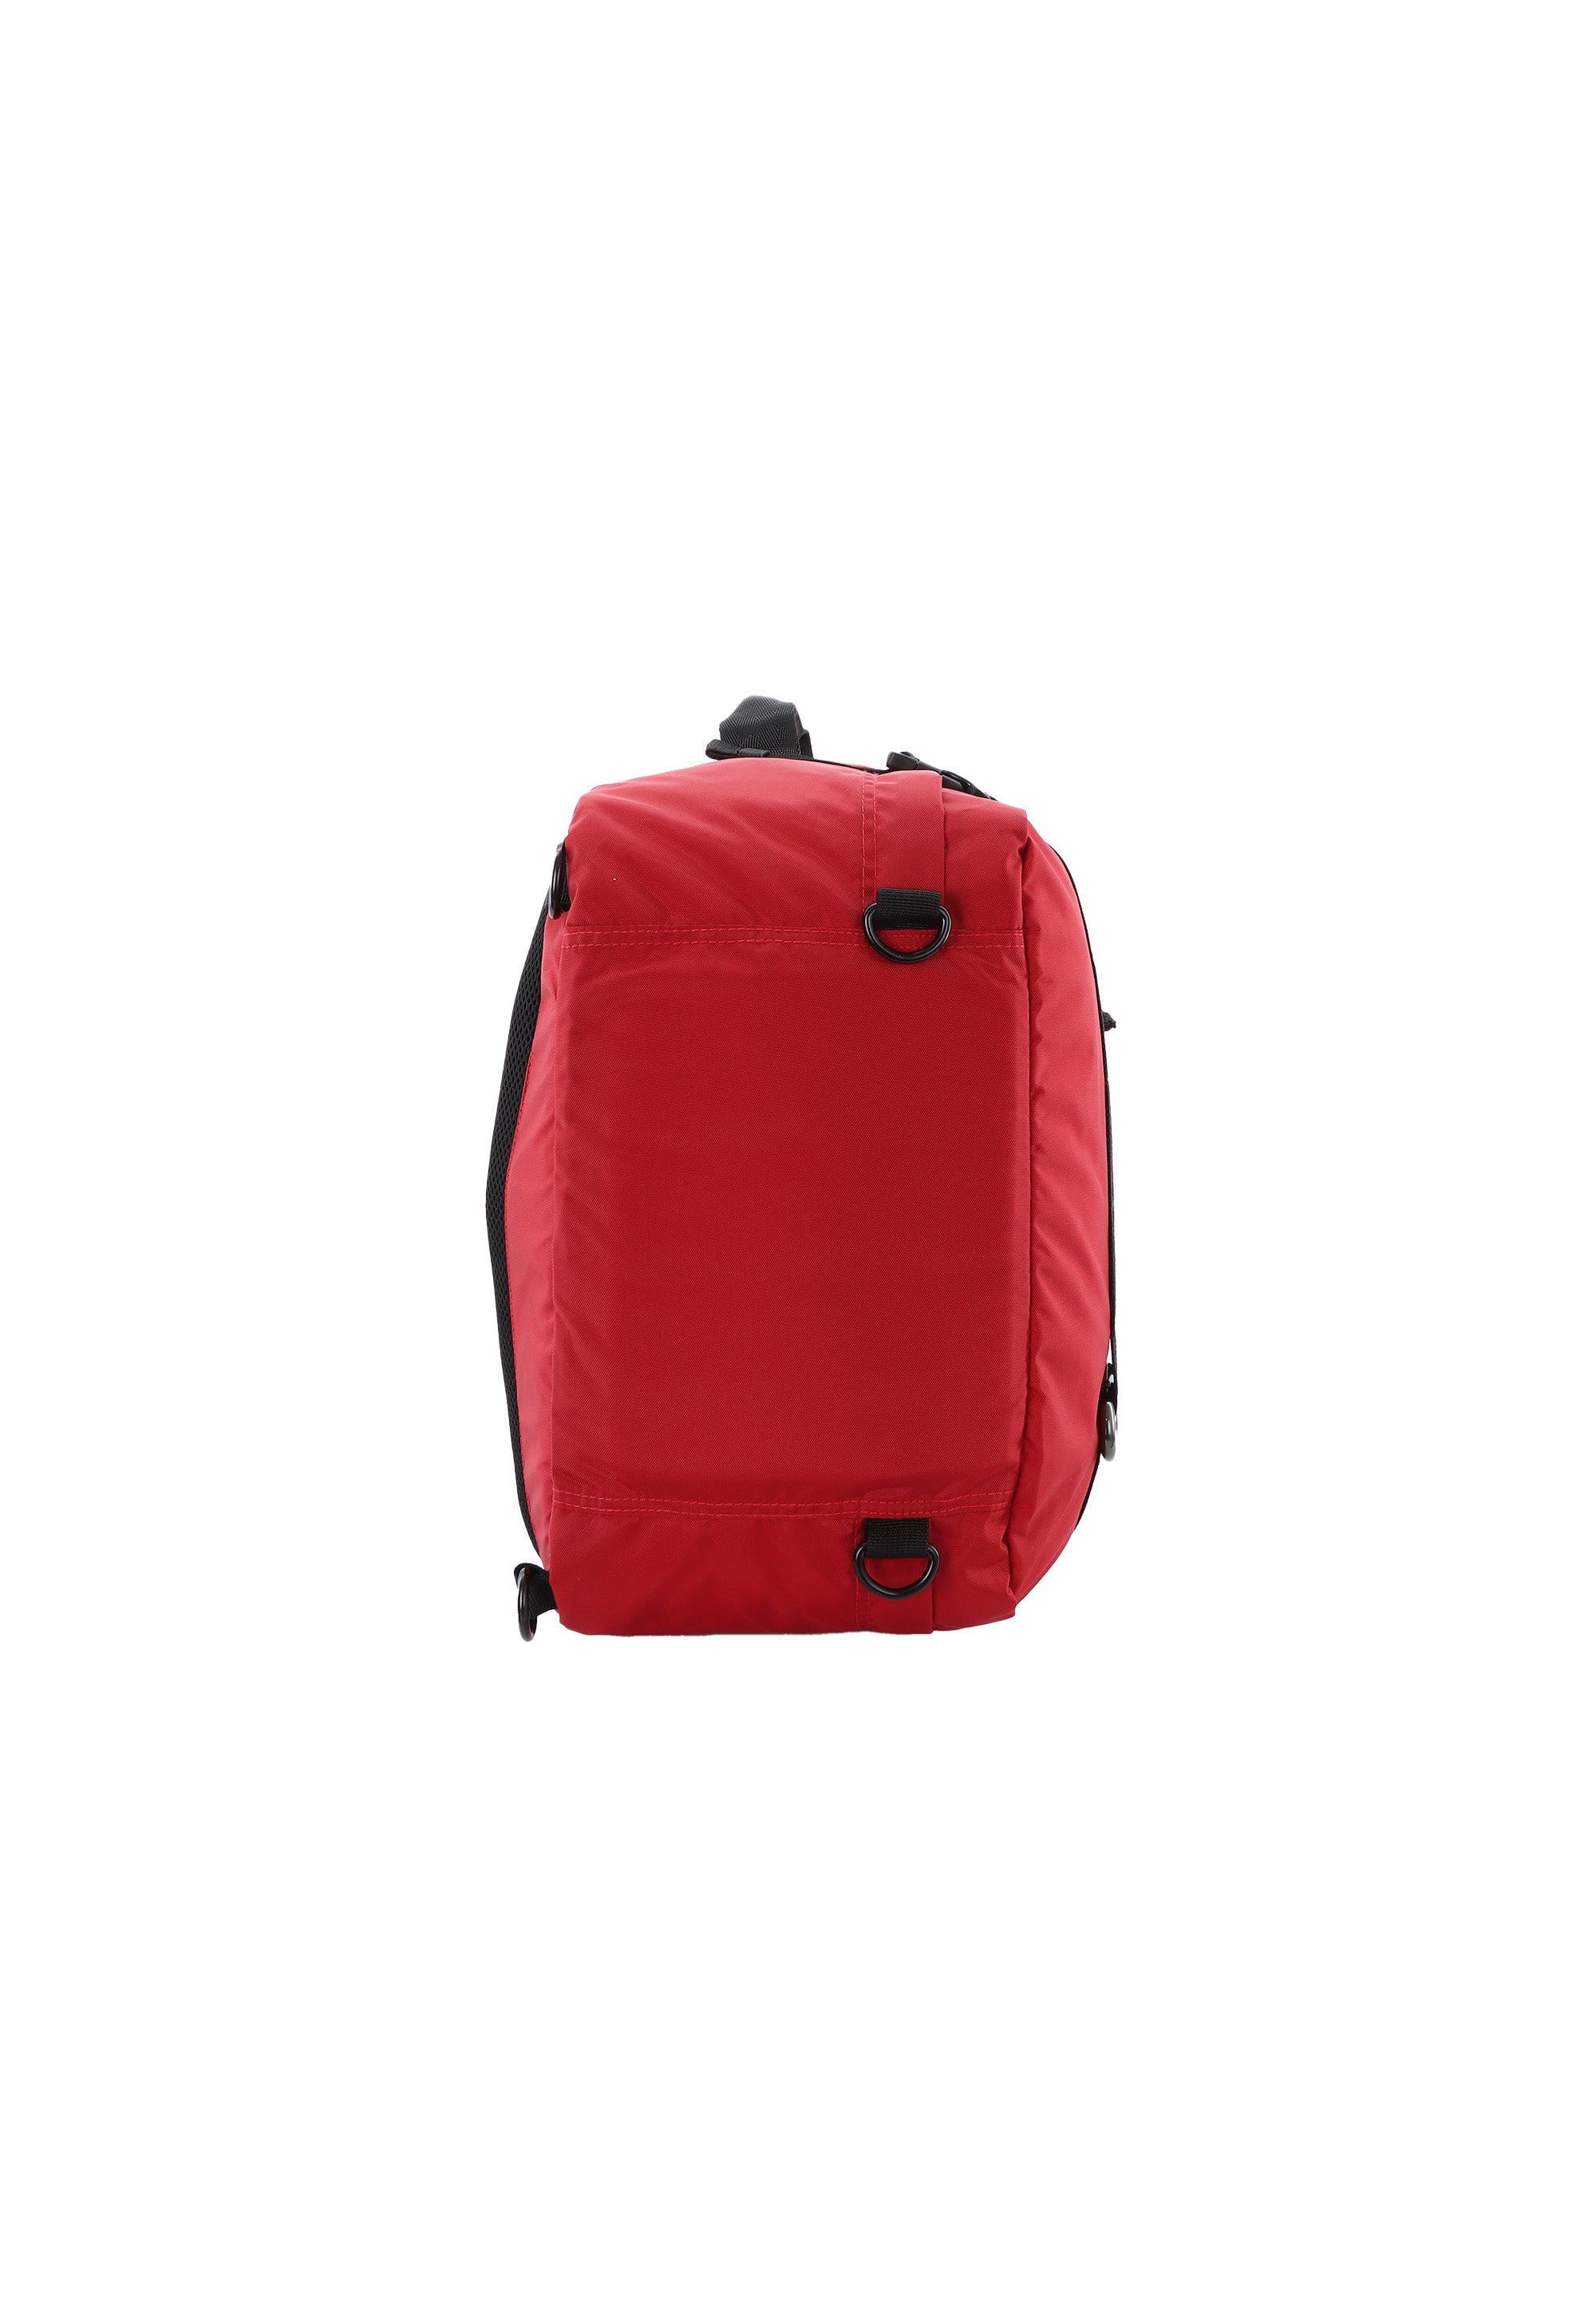 National Geographic - Hybrid | Rucksack-Tasche mit 3 Funktionen | Rot